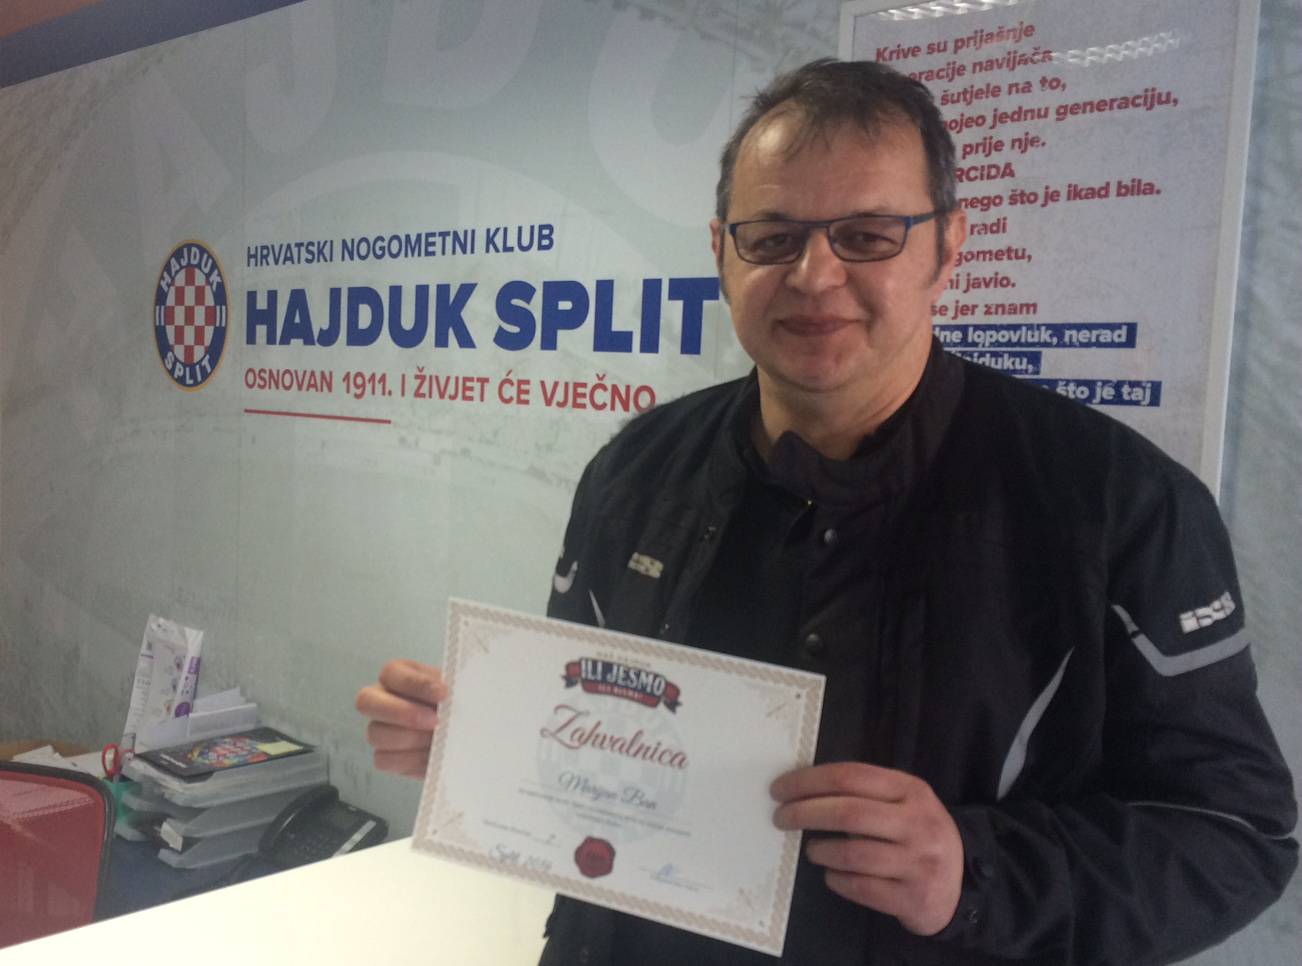 Ban donirao Našem Hajduku kroz posvetu svojoj kćeri Mirti